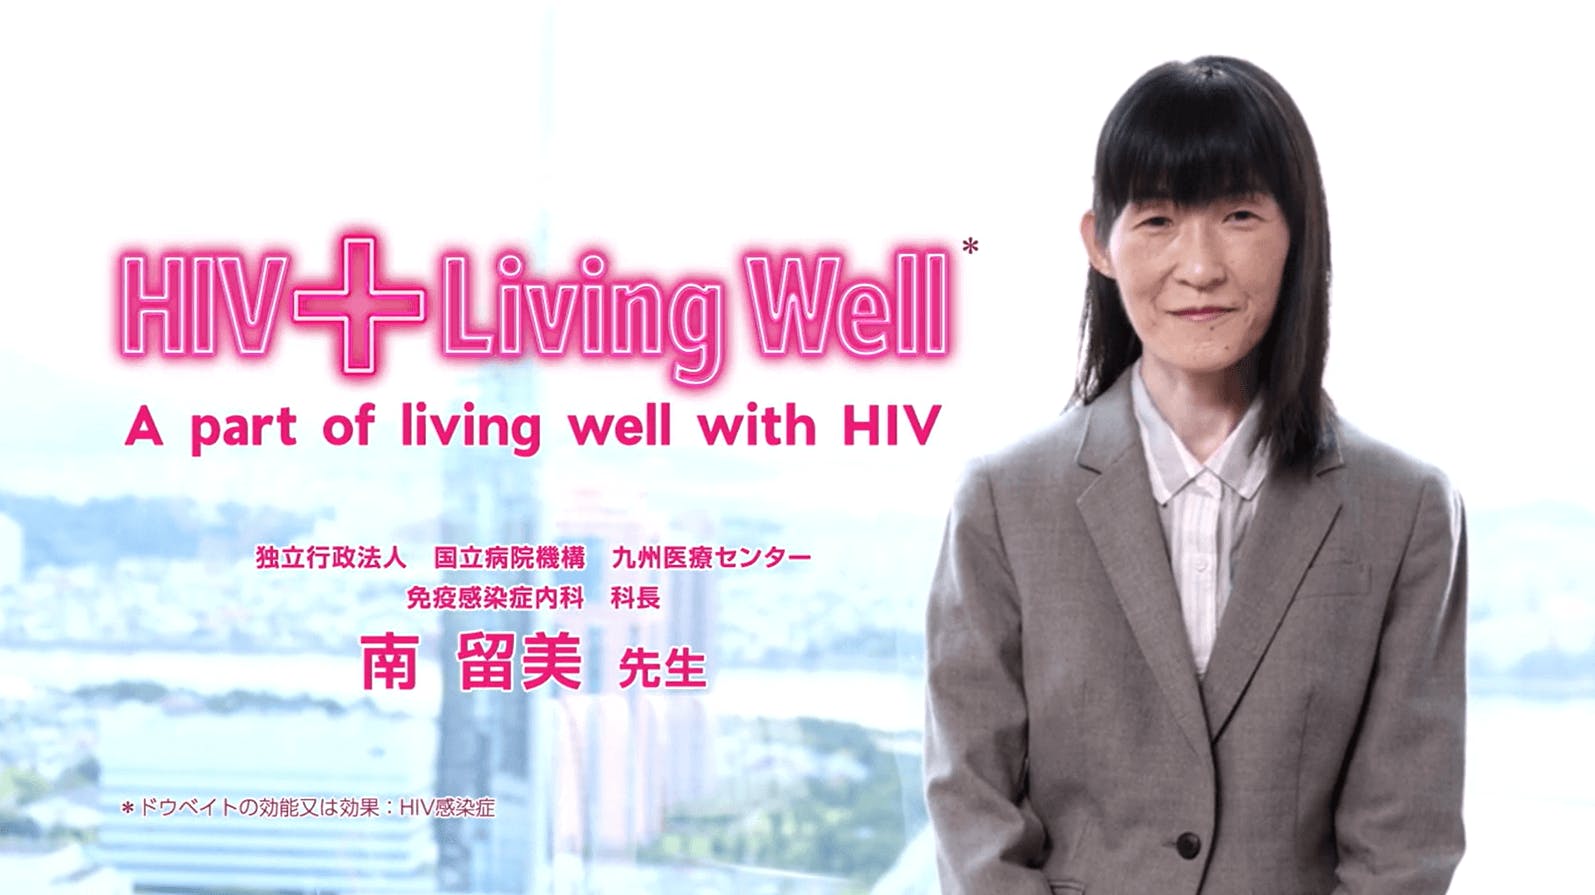 「HIV感染症の長期管理におけるHIV陽性者の要望の変化」について、九州医療センター　南留美先生にご解説いただきます。